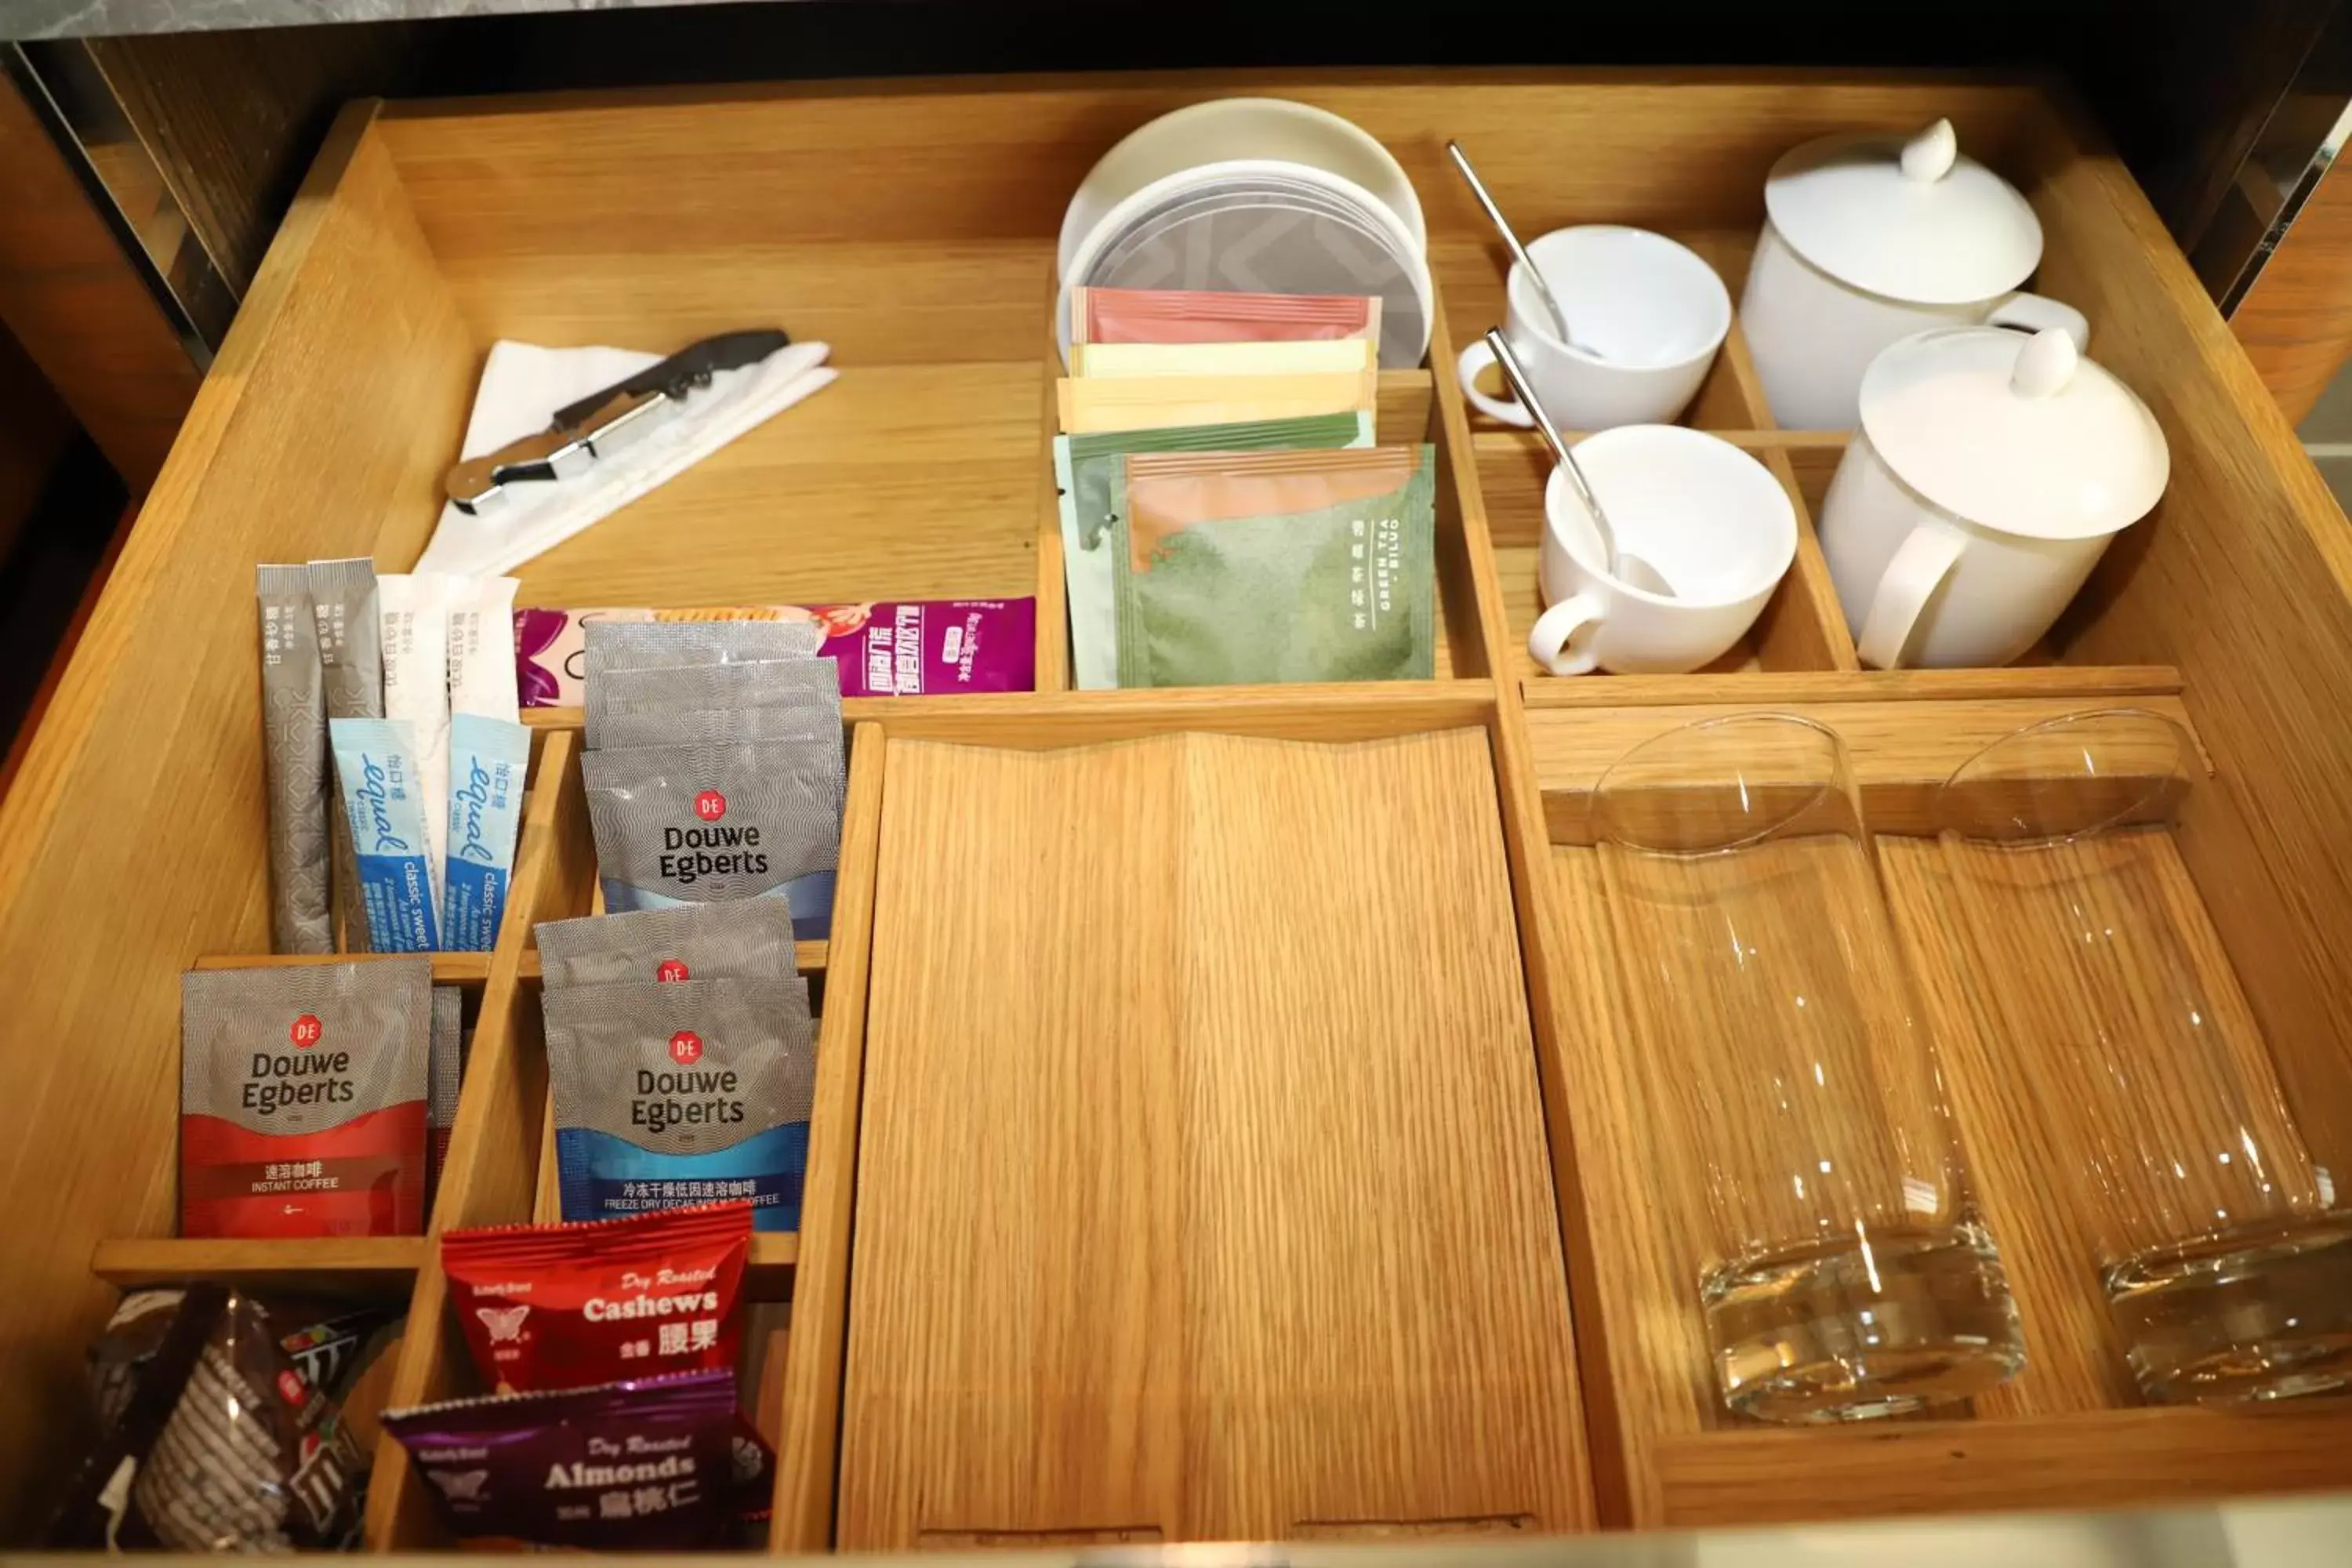 Coffee/tea facilities in Kerry Hotel, Beijing